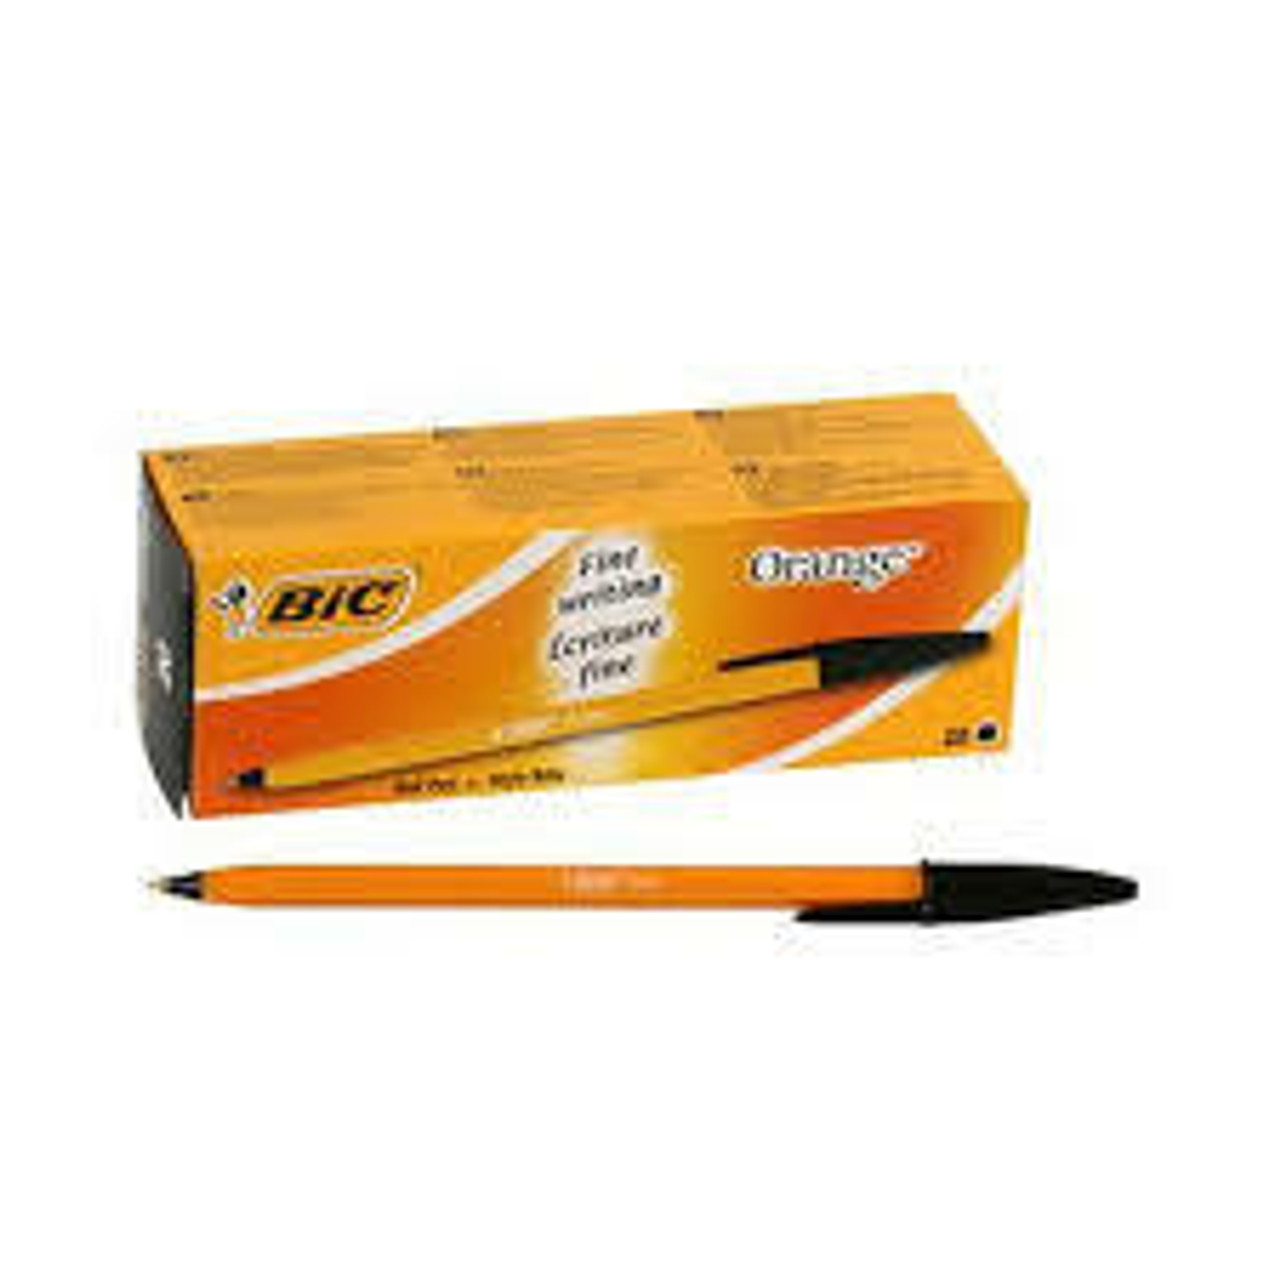 Grip Ballpoint Pens Black 20 Box Pens, Pencils & Supplies Pens Refills umoonproductions.com